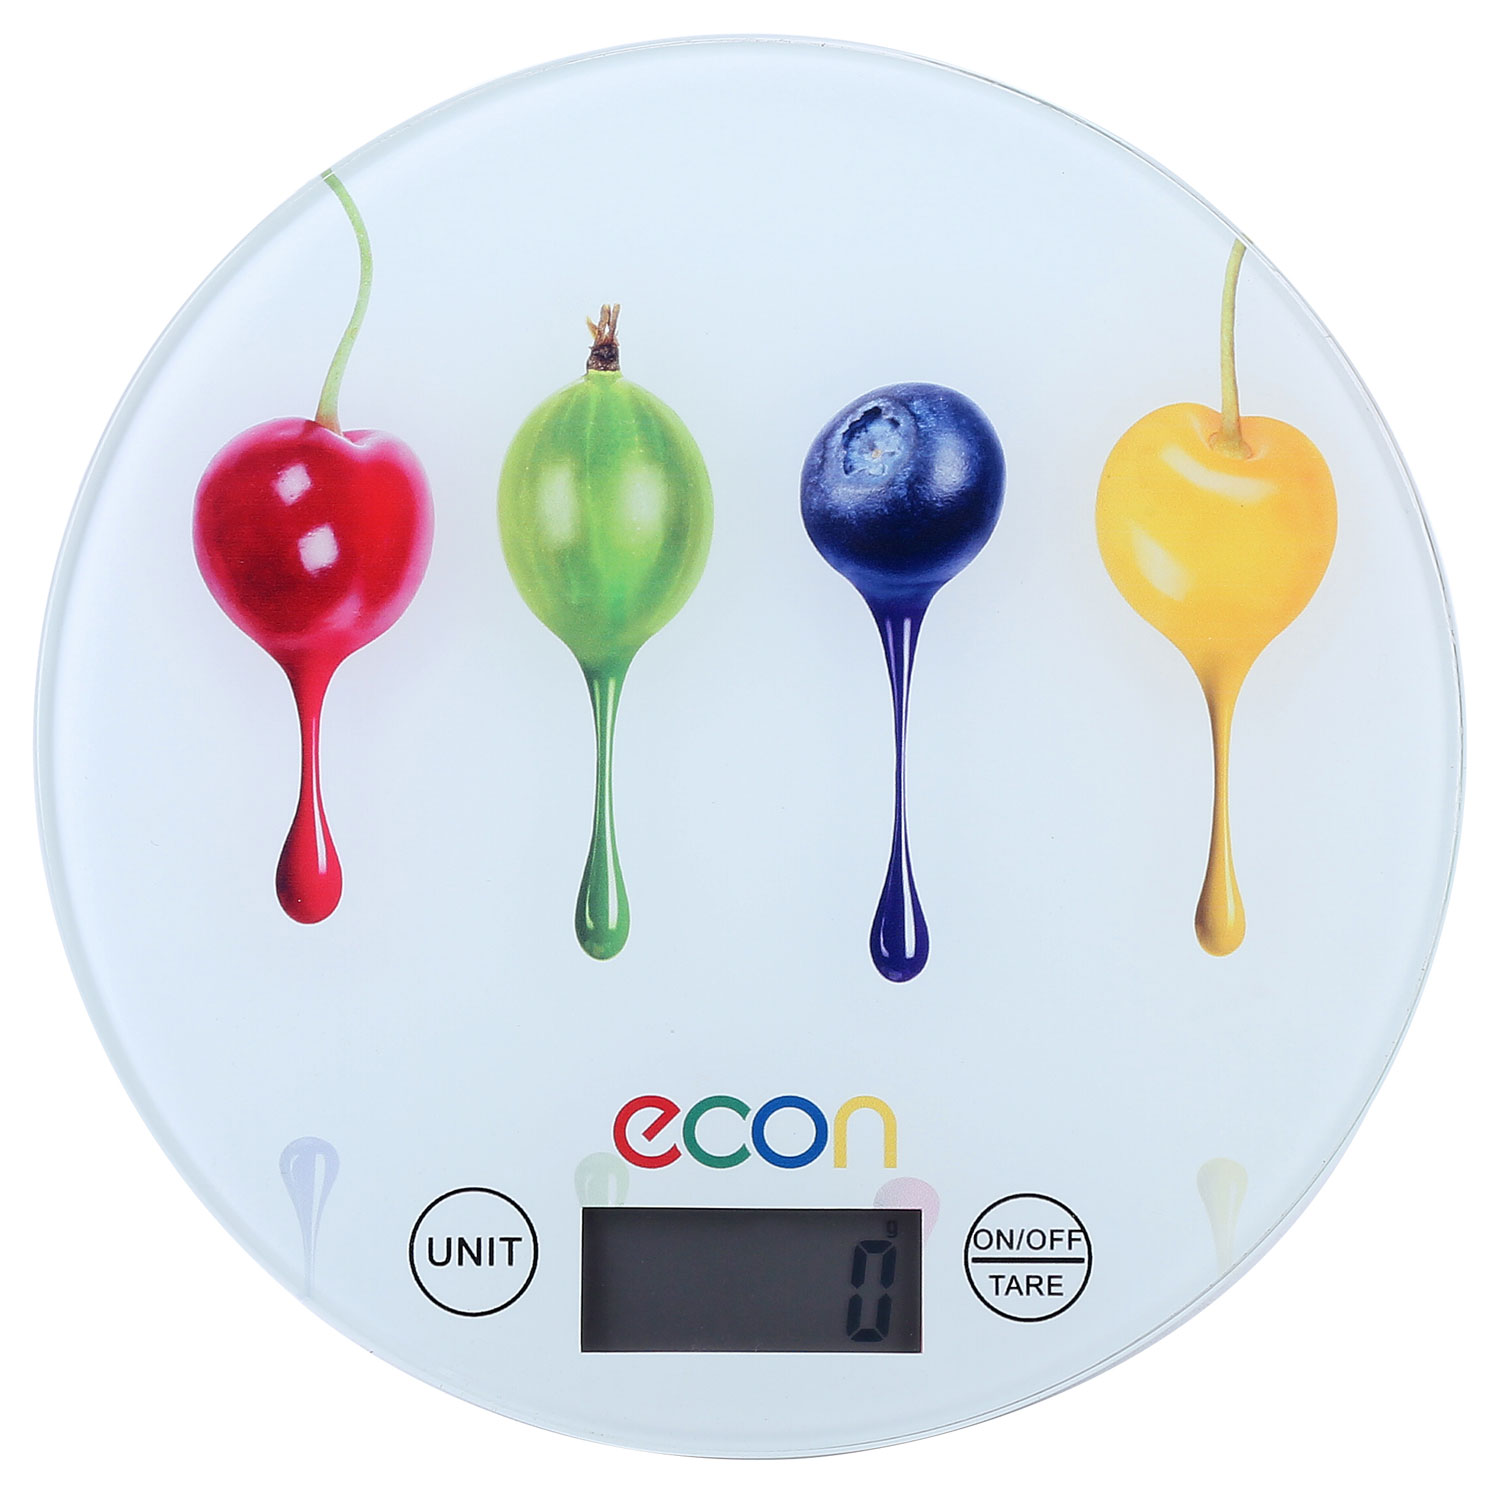 Картинка Кухонные весы ECON ECO-BS401K  по разумной цене купить в интернет магазине mall.su